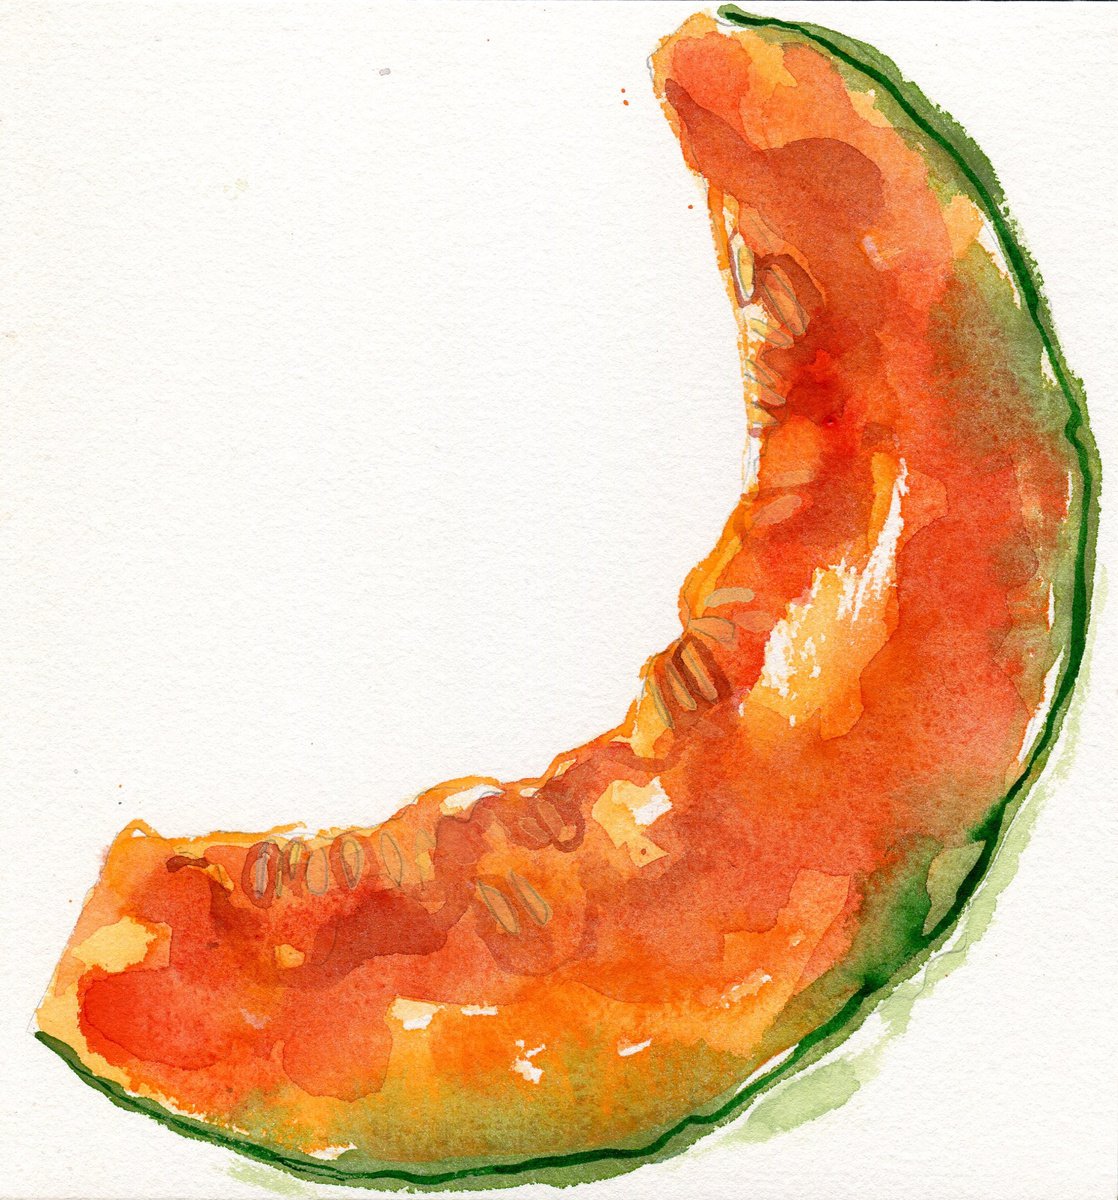 Cantaloupe melon slice by Hannah Clark